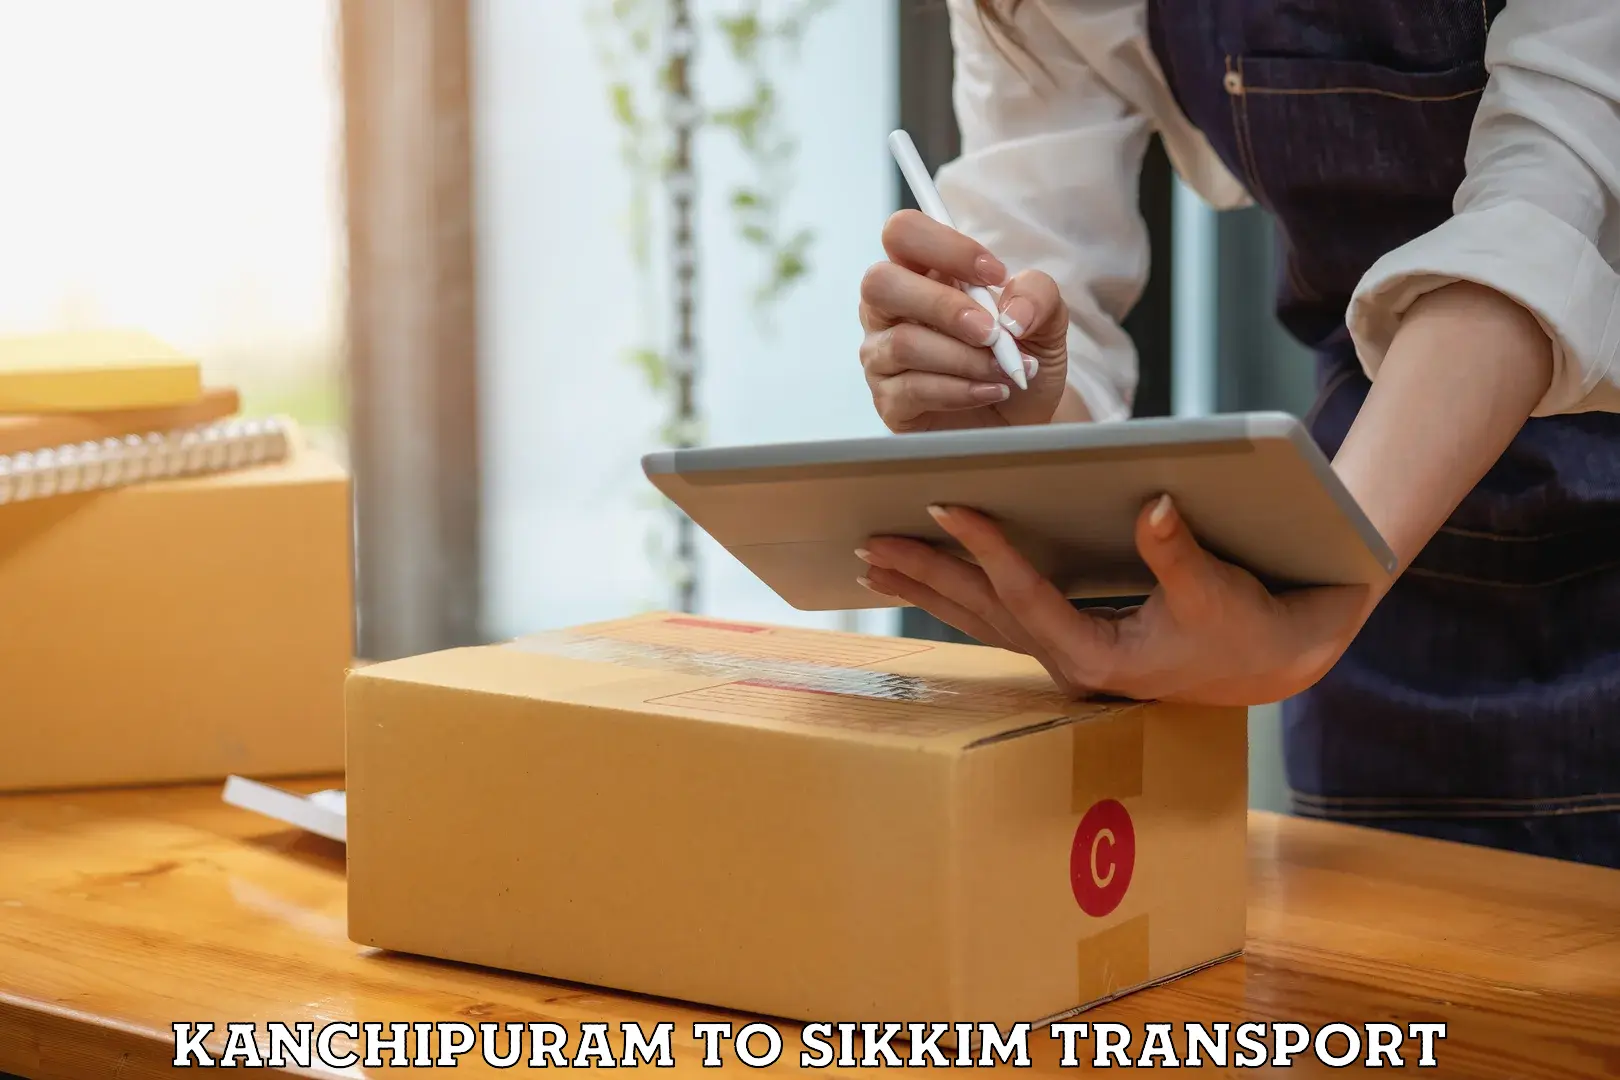 Online transport service Kanchipuram to Pelling